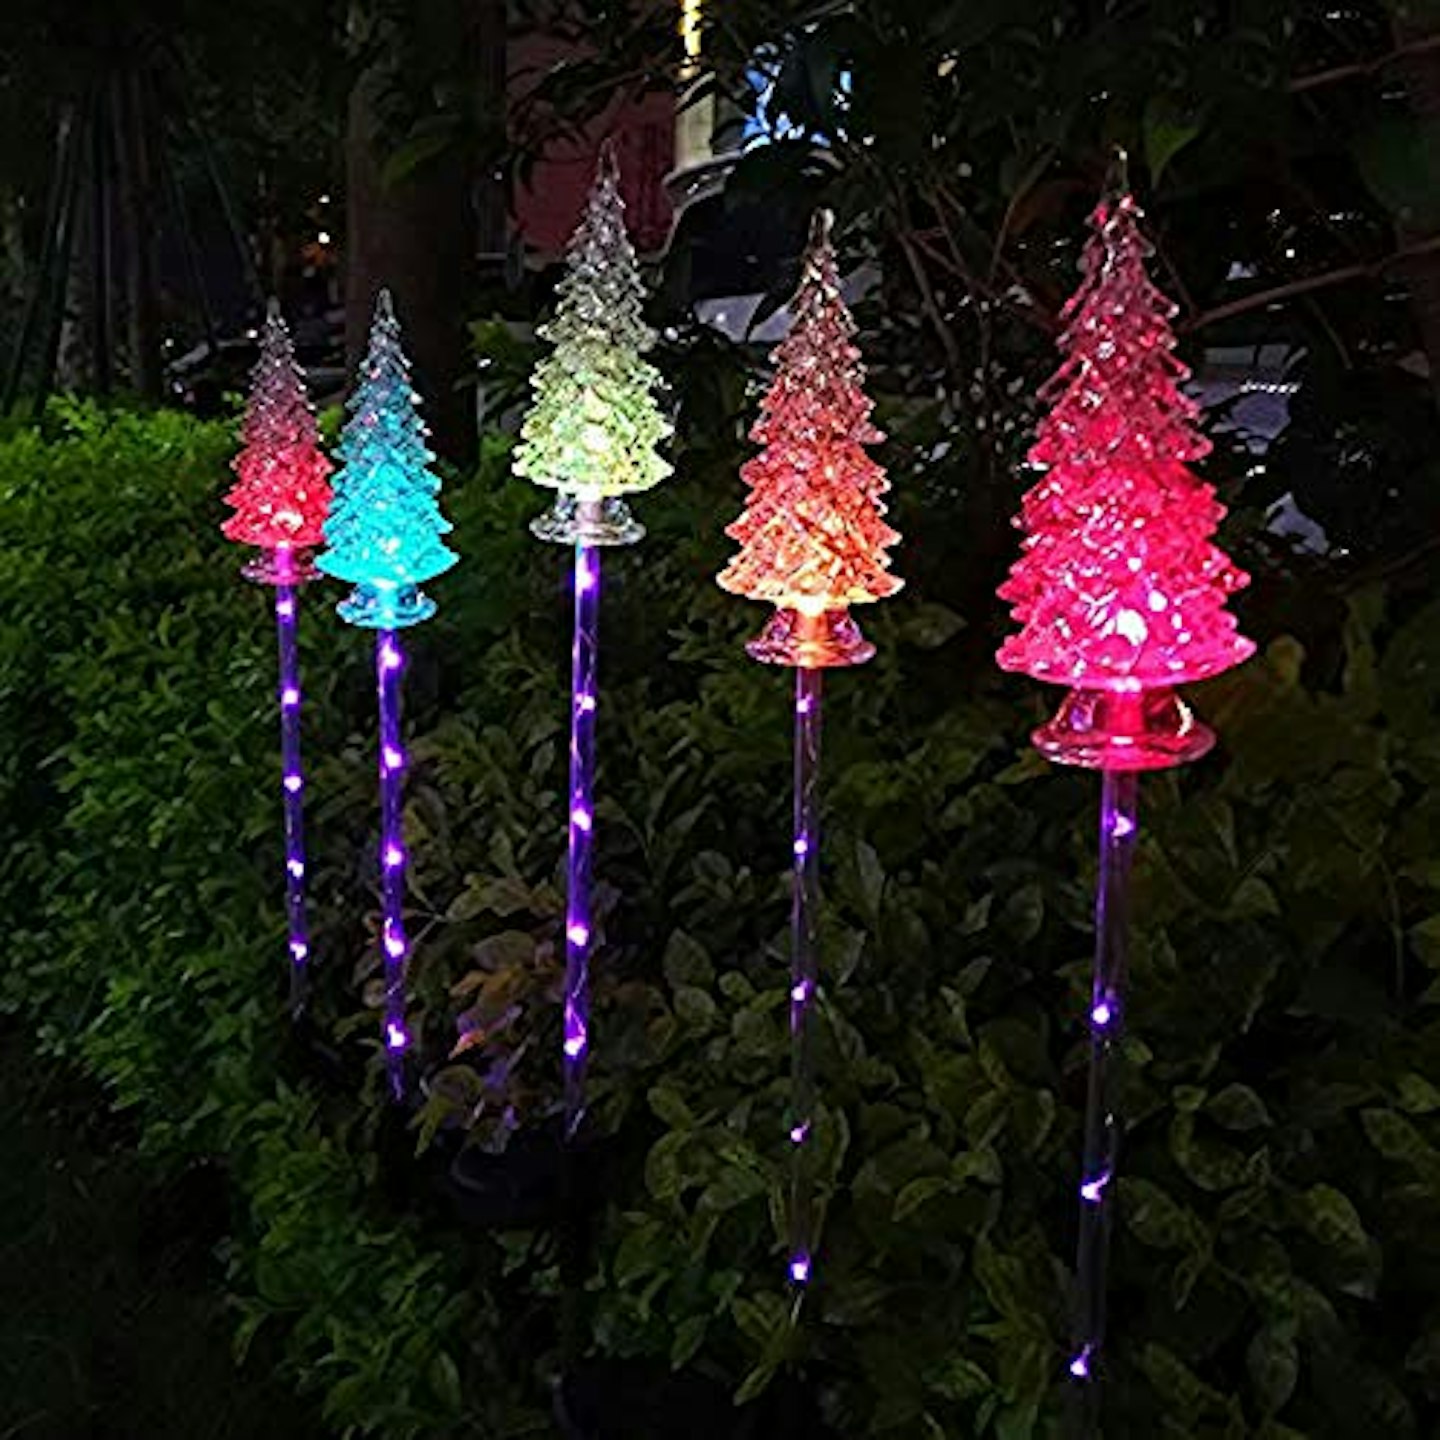 2 Solar Crystal Christmas Tree Stake Lights